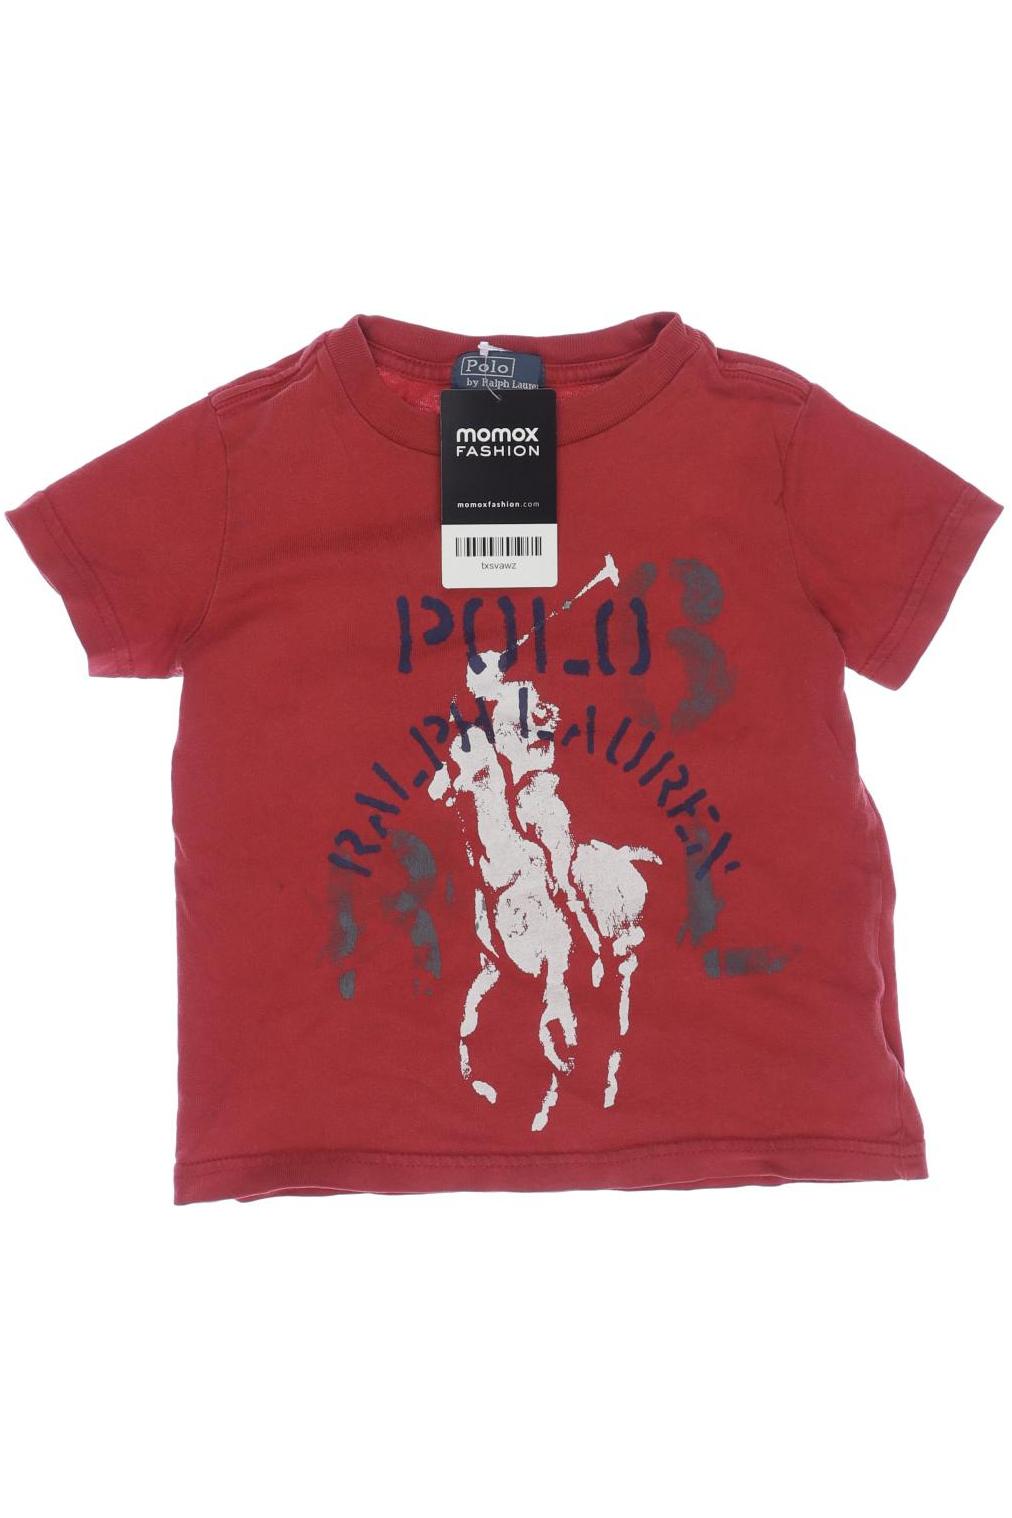 Polo Ralph Lauren Jungen T-Shirt, rot von Polo Ralph Lauren